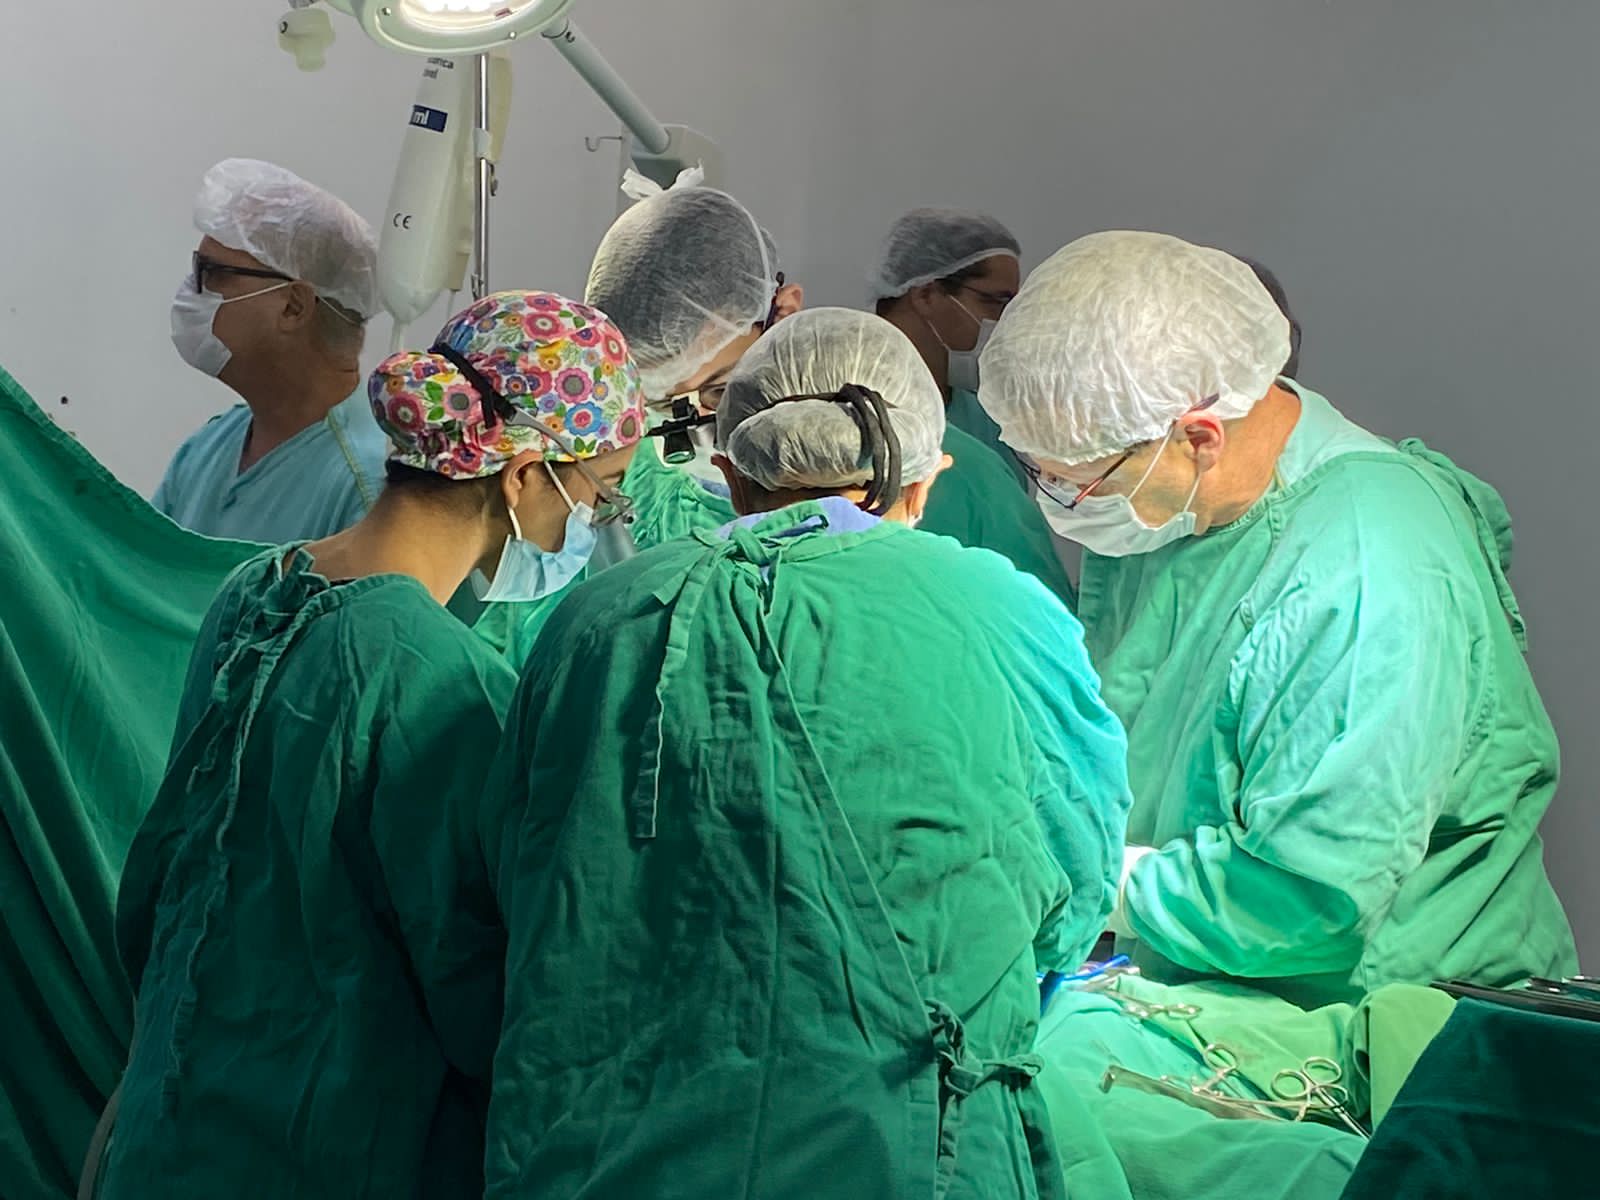 IMED - Instituto de Medicina, Estudos e Desenvolvimento | HEF - Hospital Estadual de Formosa | Captações de órgãos